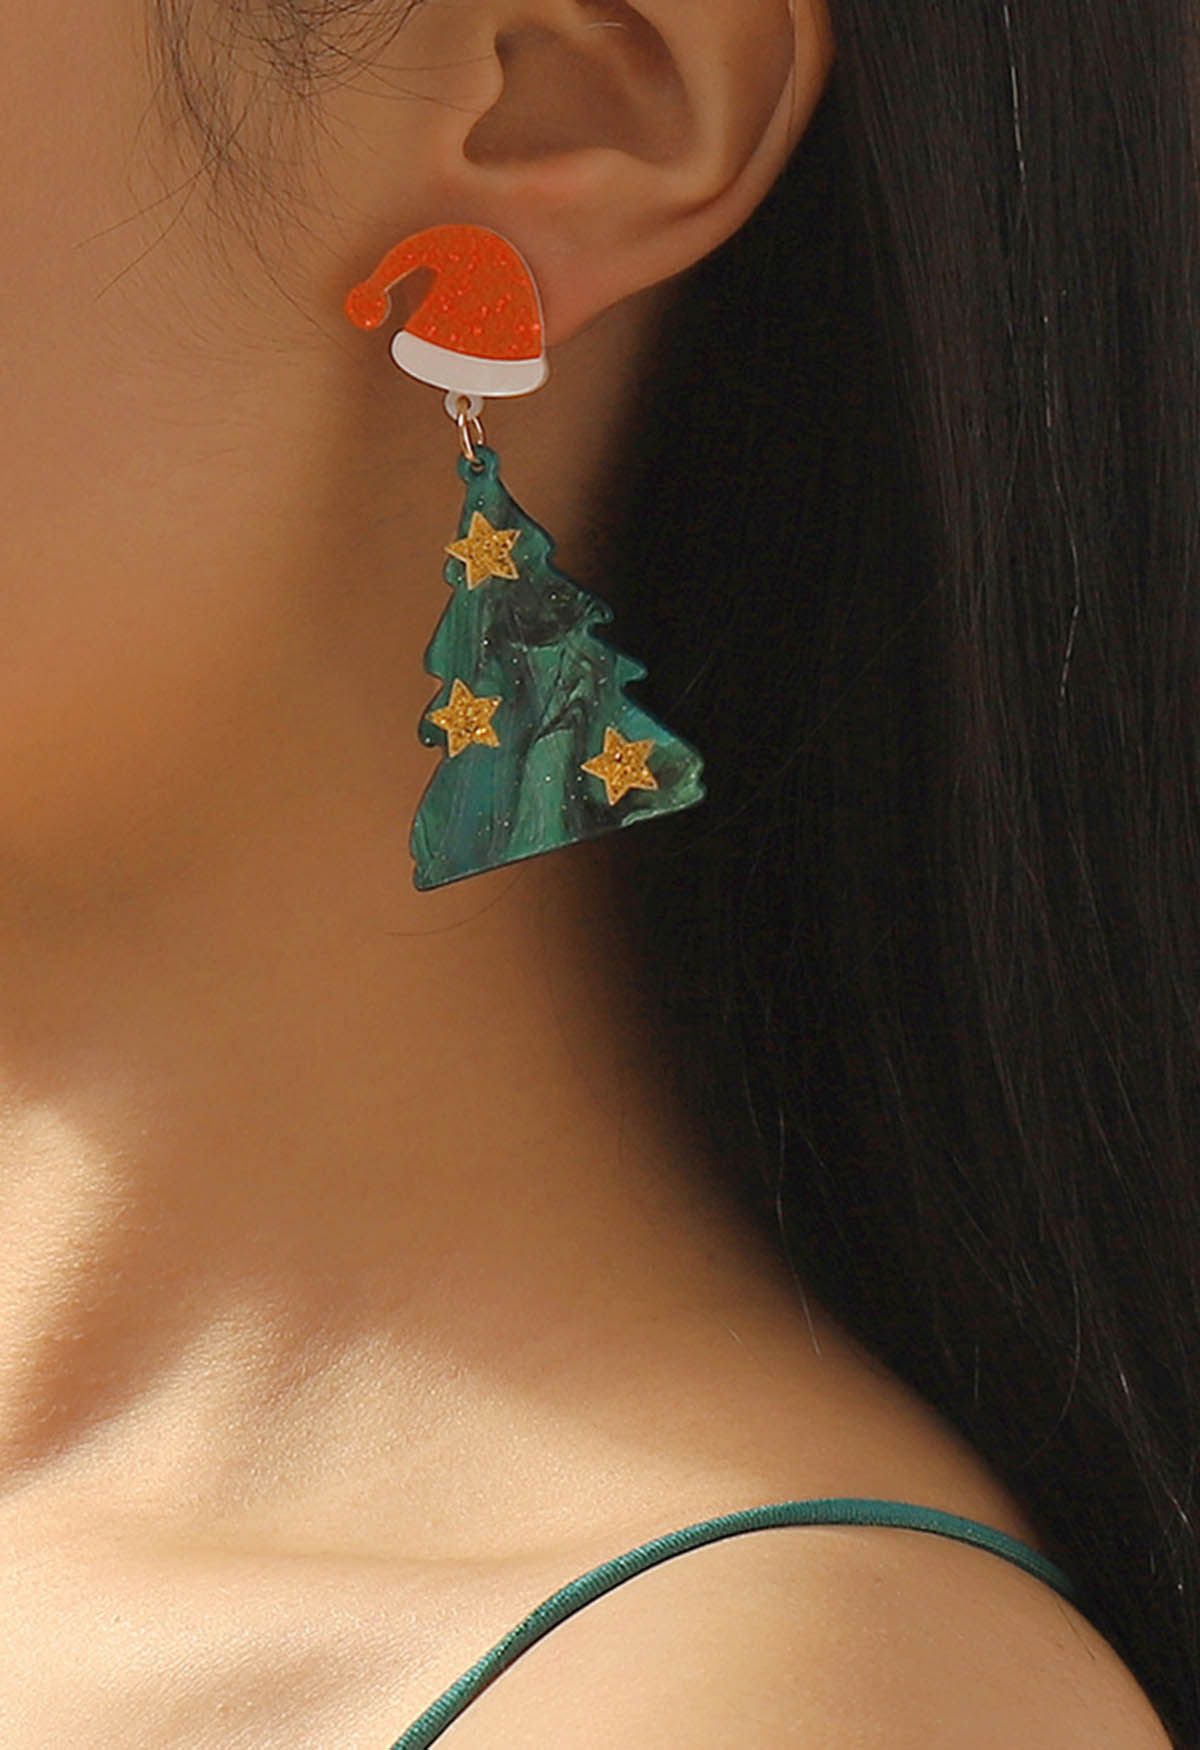 
Christmas Tree Starry Earrings in Green